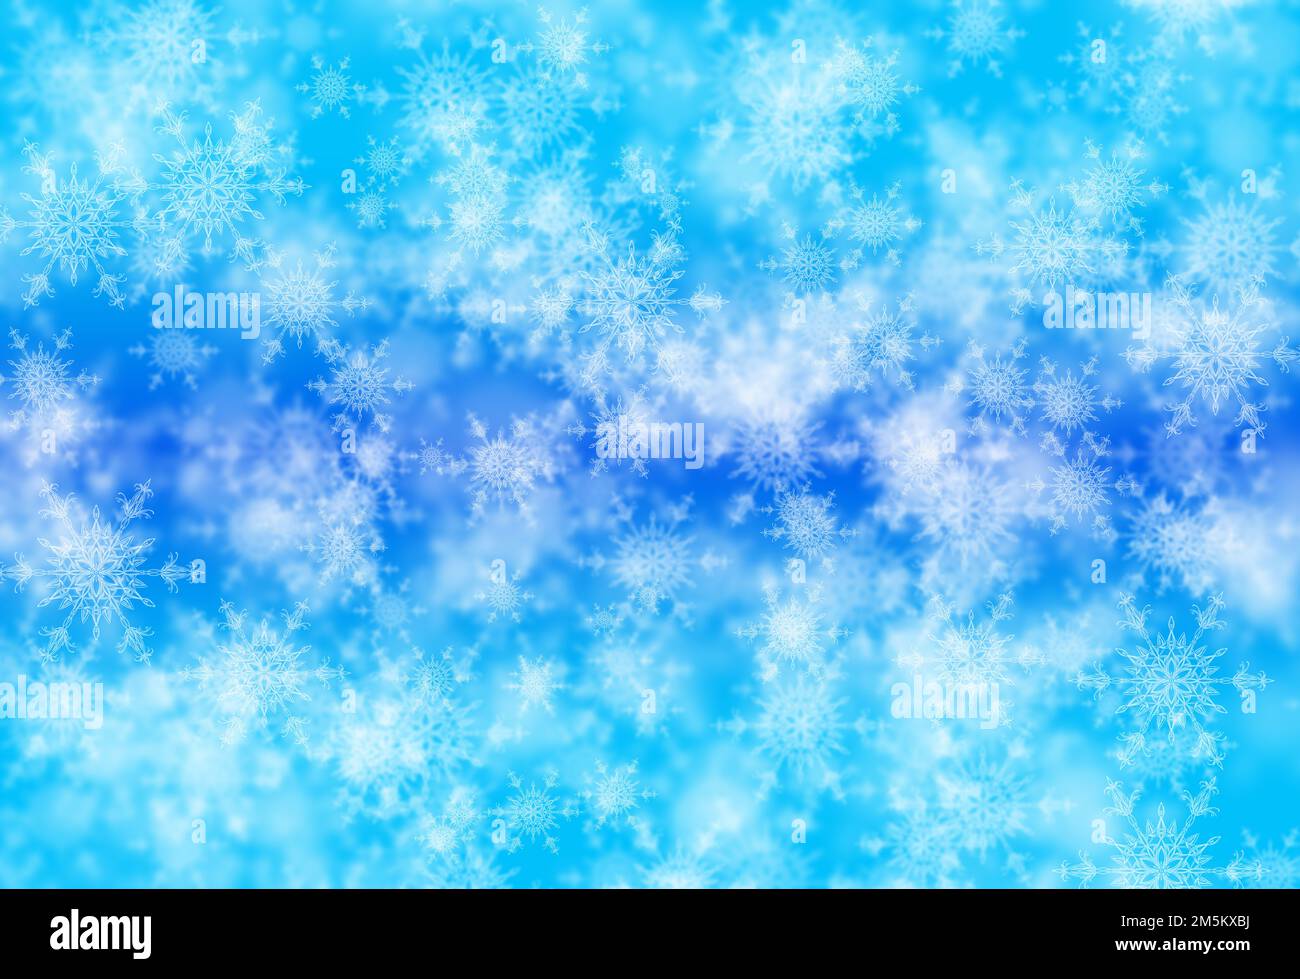 Digital erstelltes Bild des abstrakten blauen Schneeflocken-Hintergrunds. Stockfoto